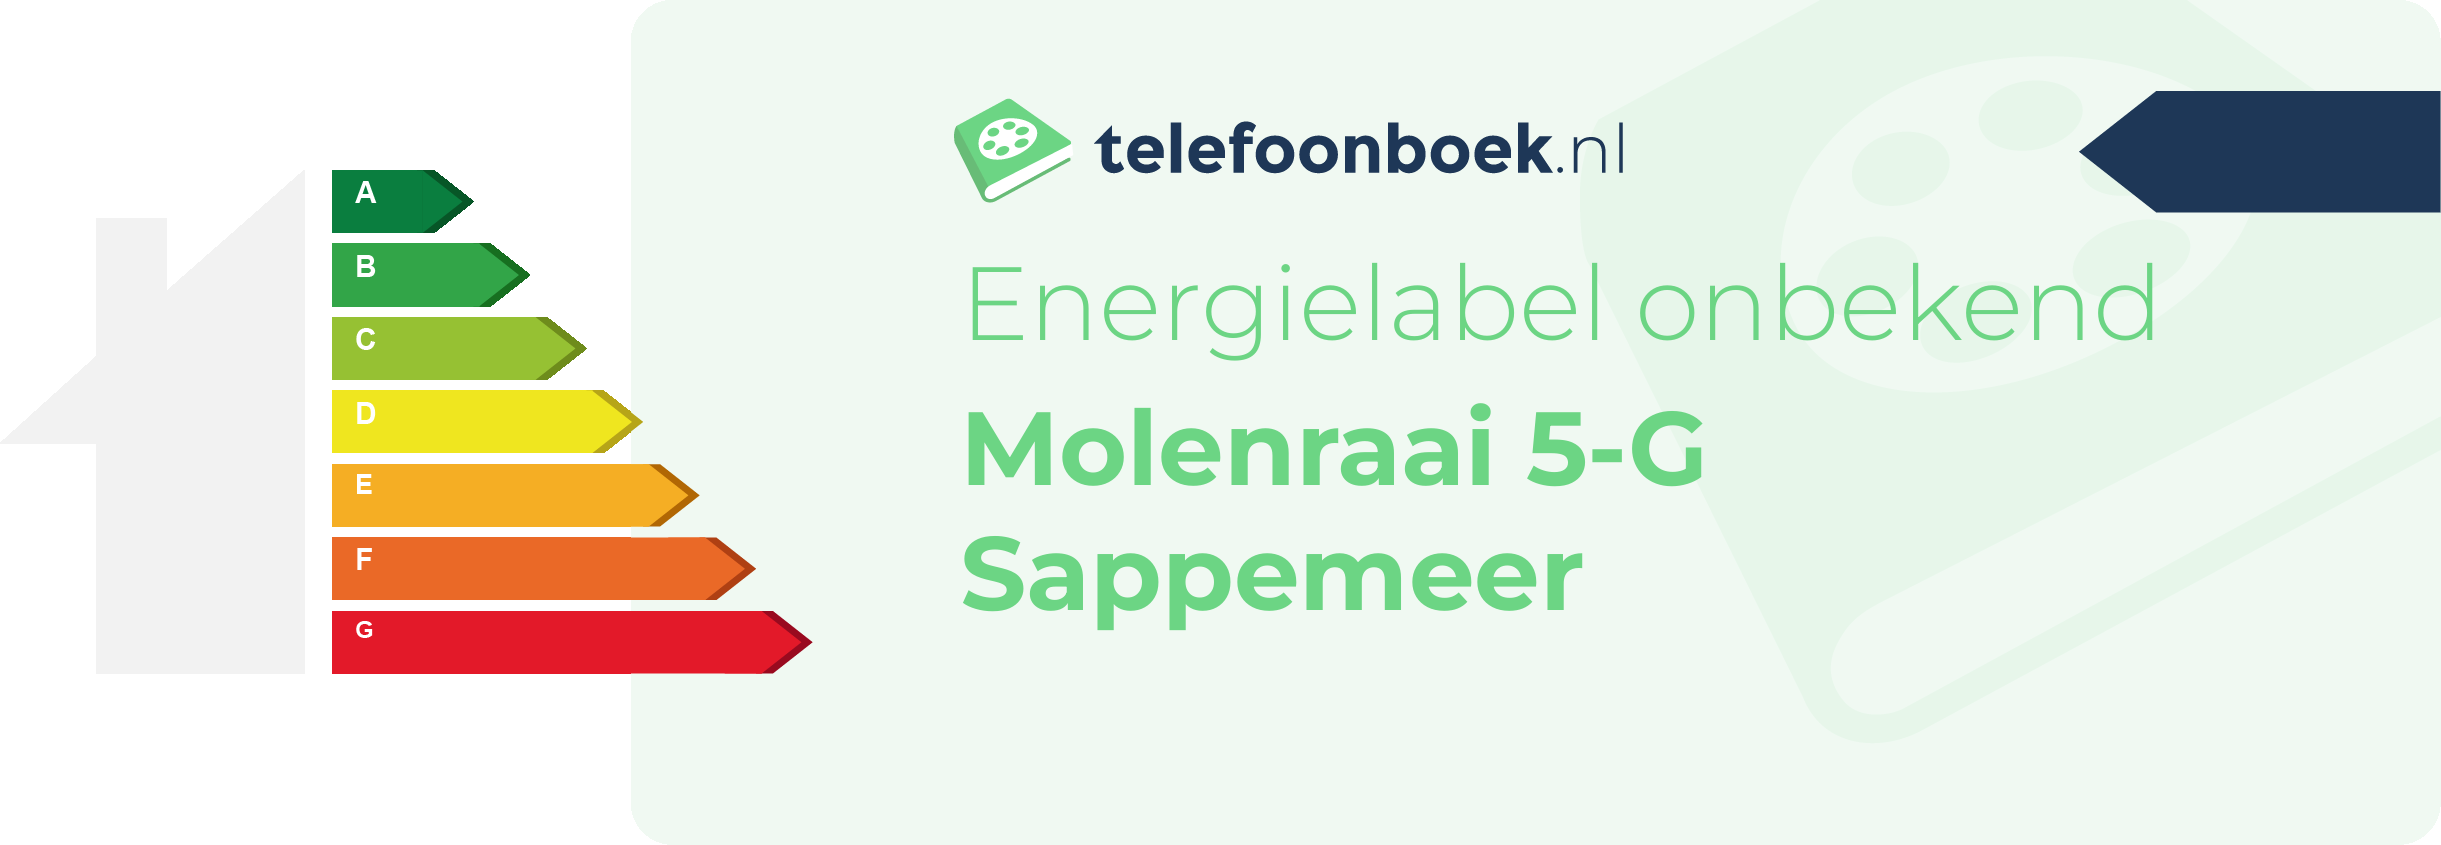 Energielabel Molenraai 5-G Sappemeer